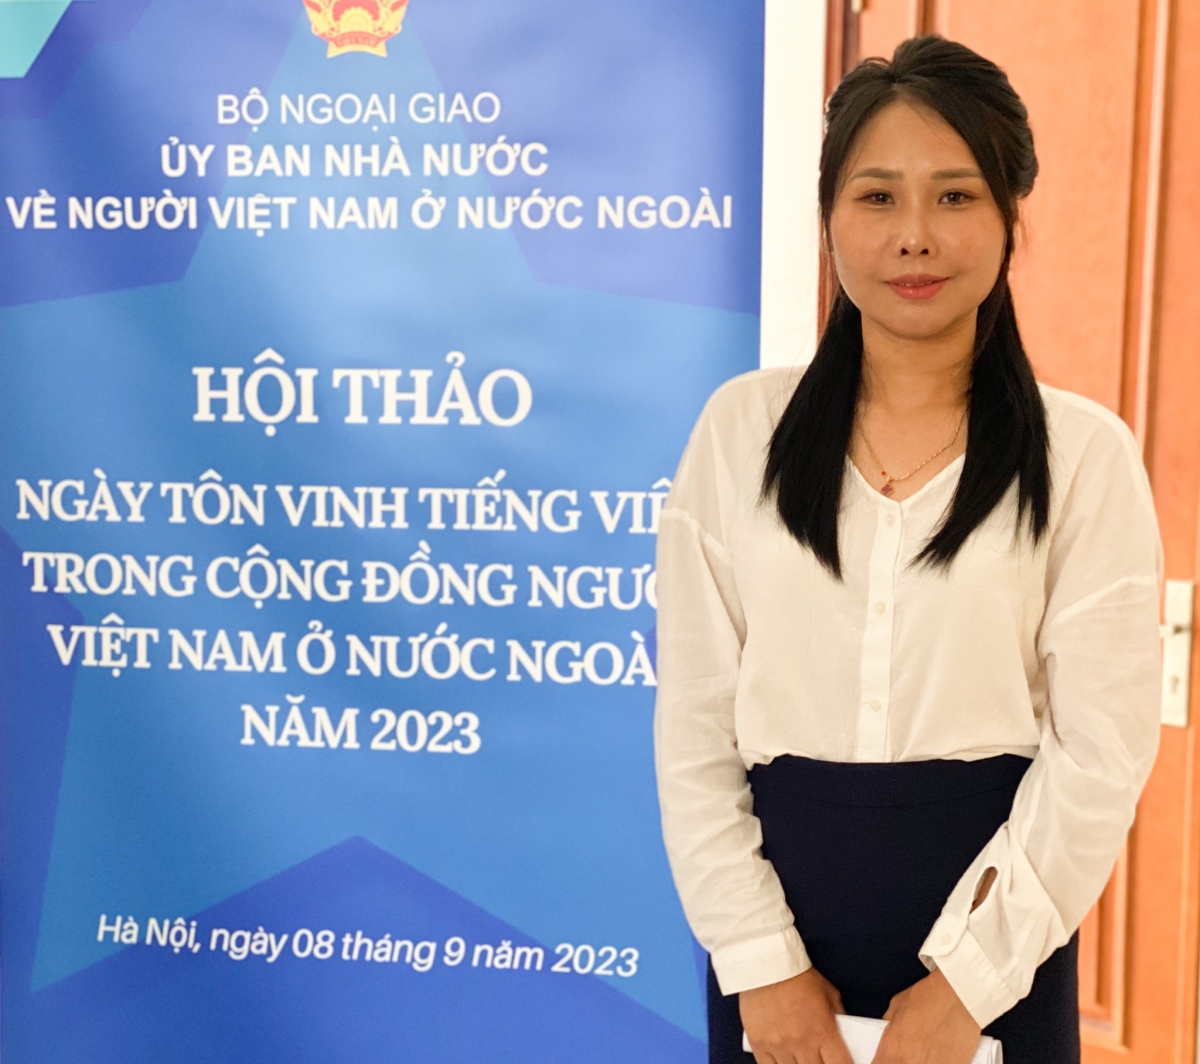 Chị Lê Thương, một trong những cá nhân tích cực trong việc thúc đẩy các hoạt động dạy học và duy trì tiếng Việt trong cộng đồng người Việt ở Nhật Bản.